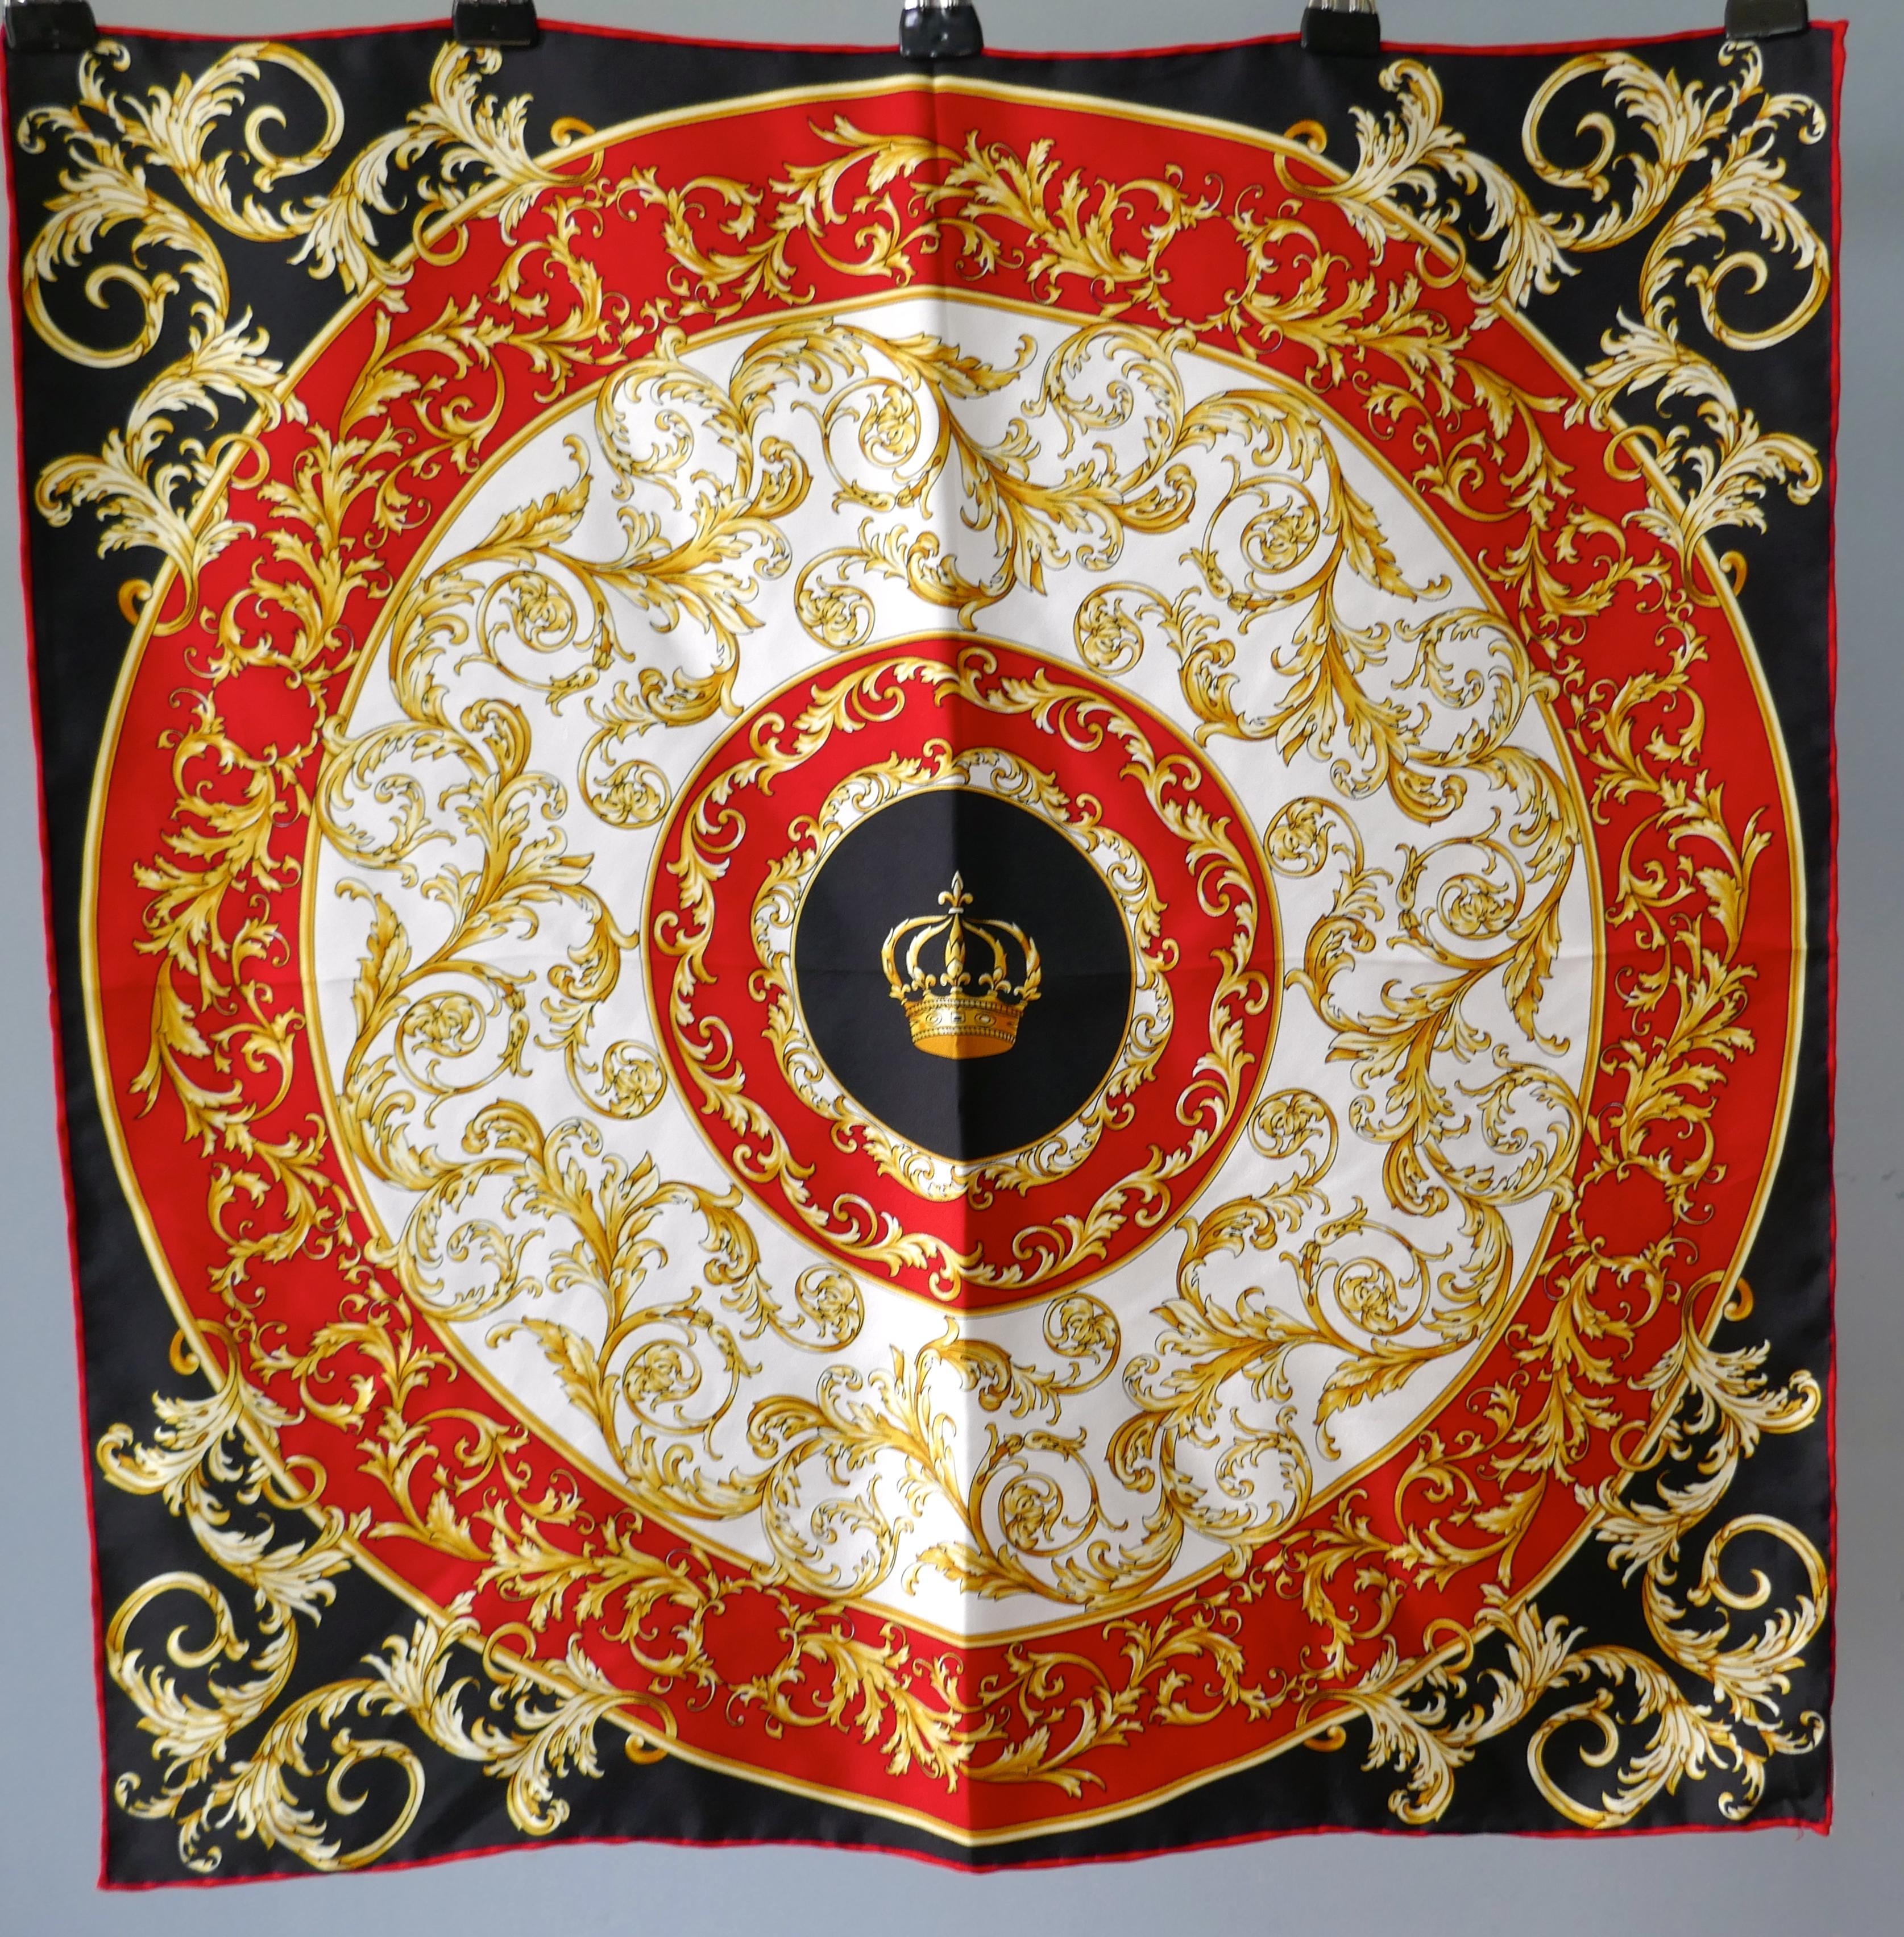 Helen Leigh Seidenhalstuch Klassisches Wappenmuster aus der italienischen Kollektion

Schöner Schal mit Krone in einer zentralen Kartusche, die auf eine titulierte Verbindung hinweist 
In Gold, Schwarz und Rot Palette, Seidenschal Maßnahmen 21 